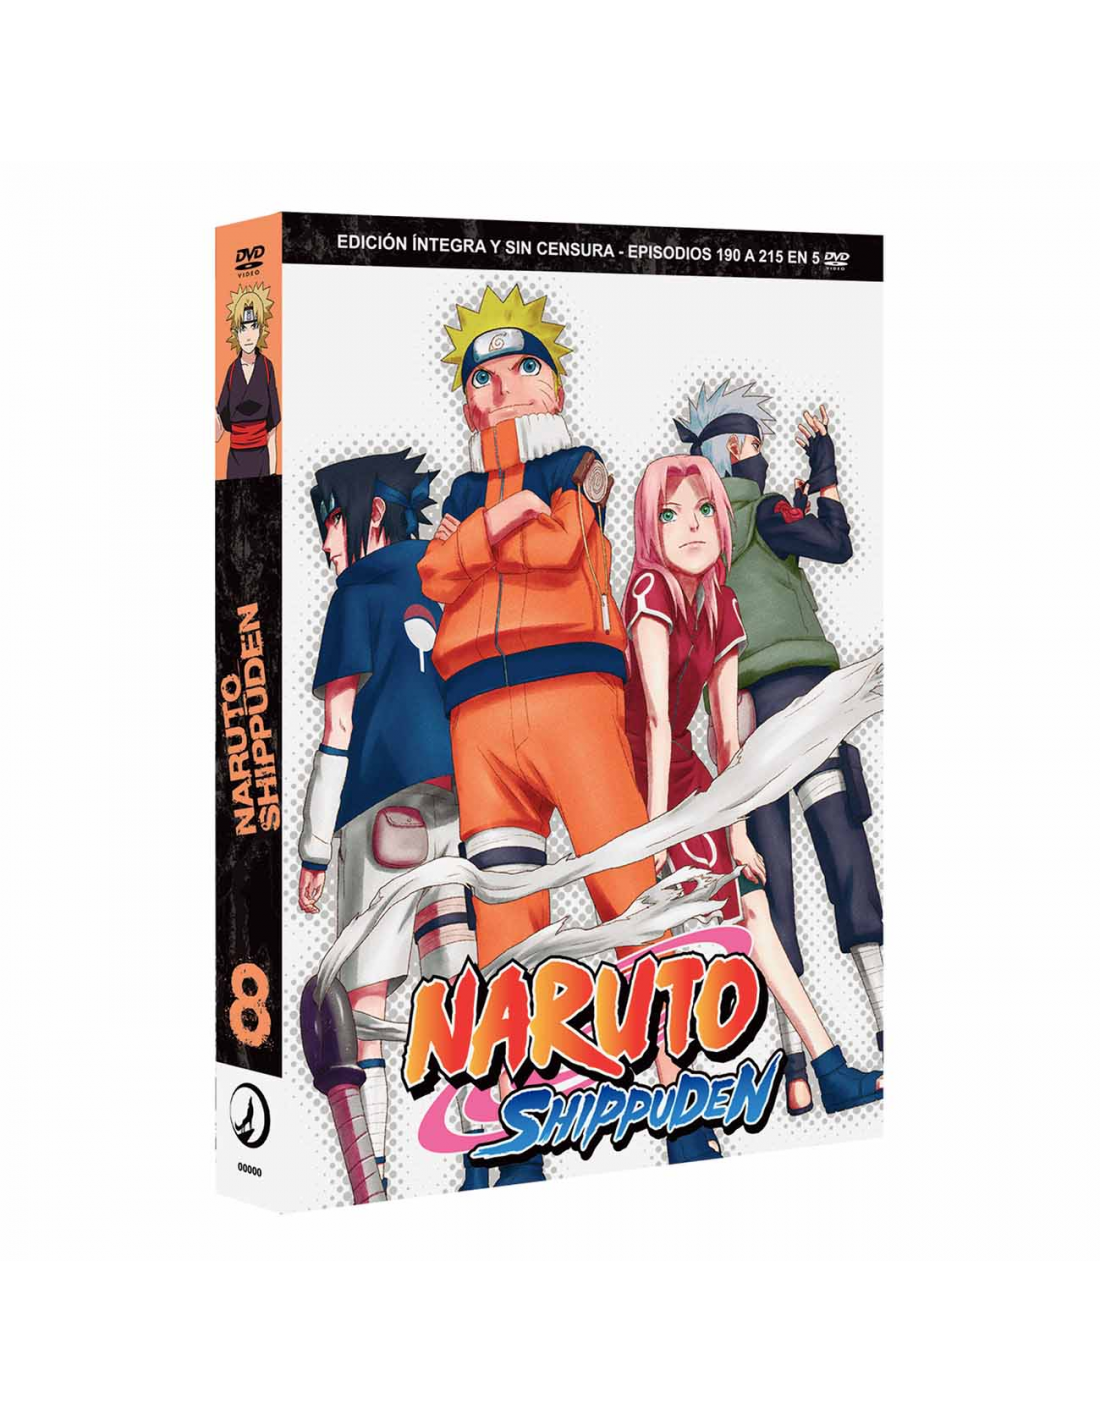 Crítica de Naruto Shippuden BOX 1 (Selecta Visión) - Ramen Para Dos